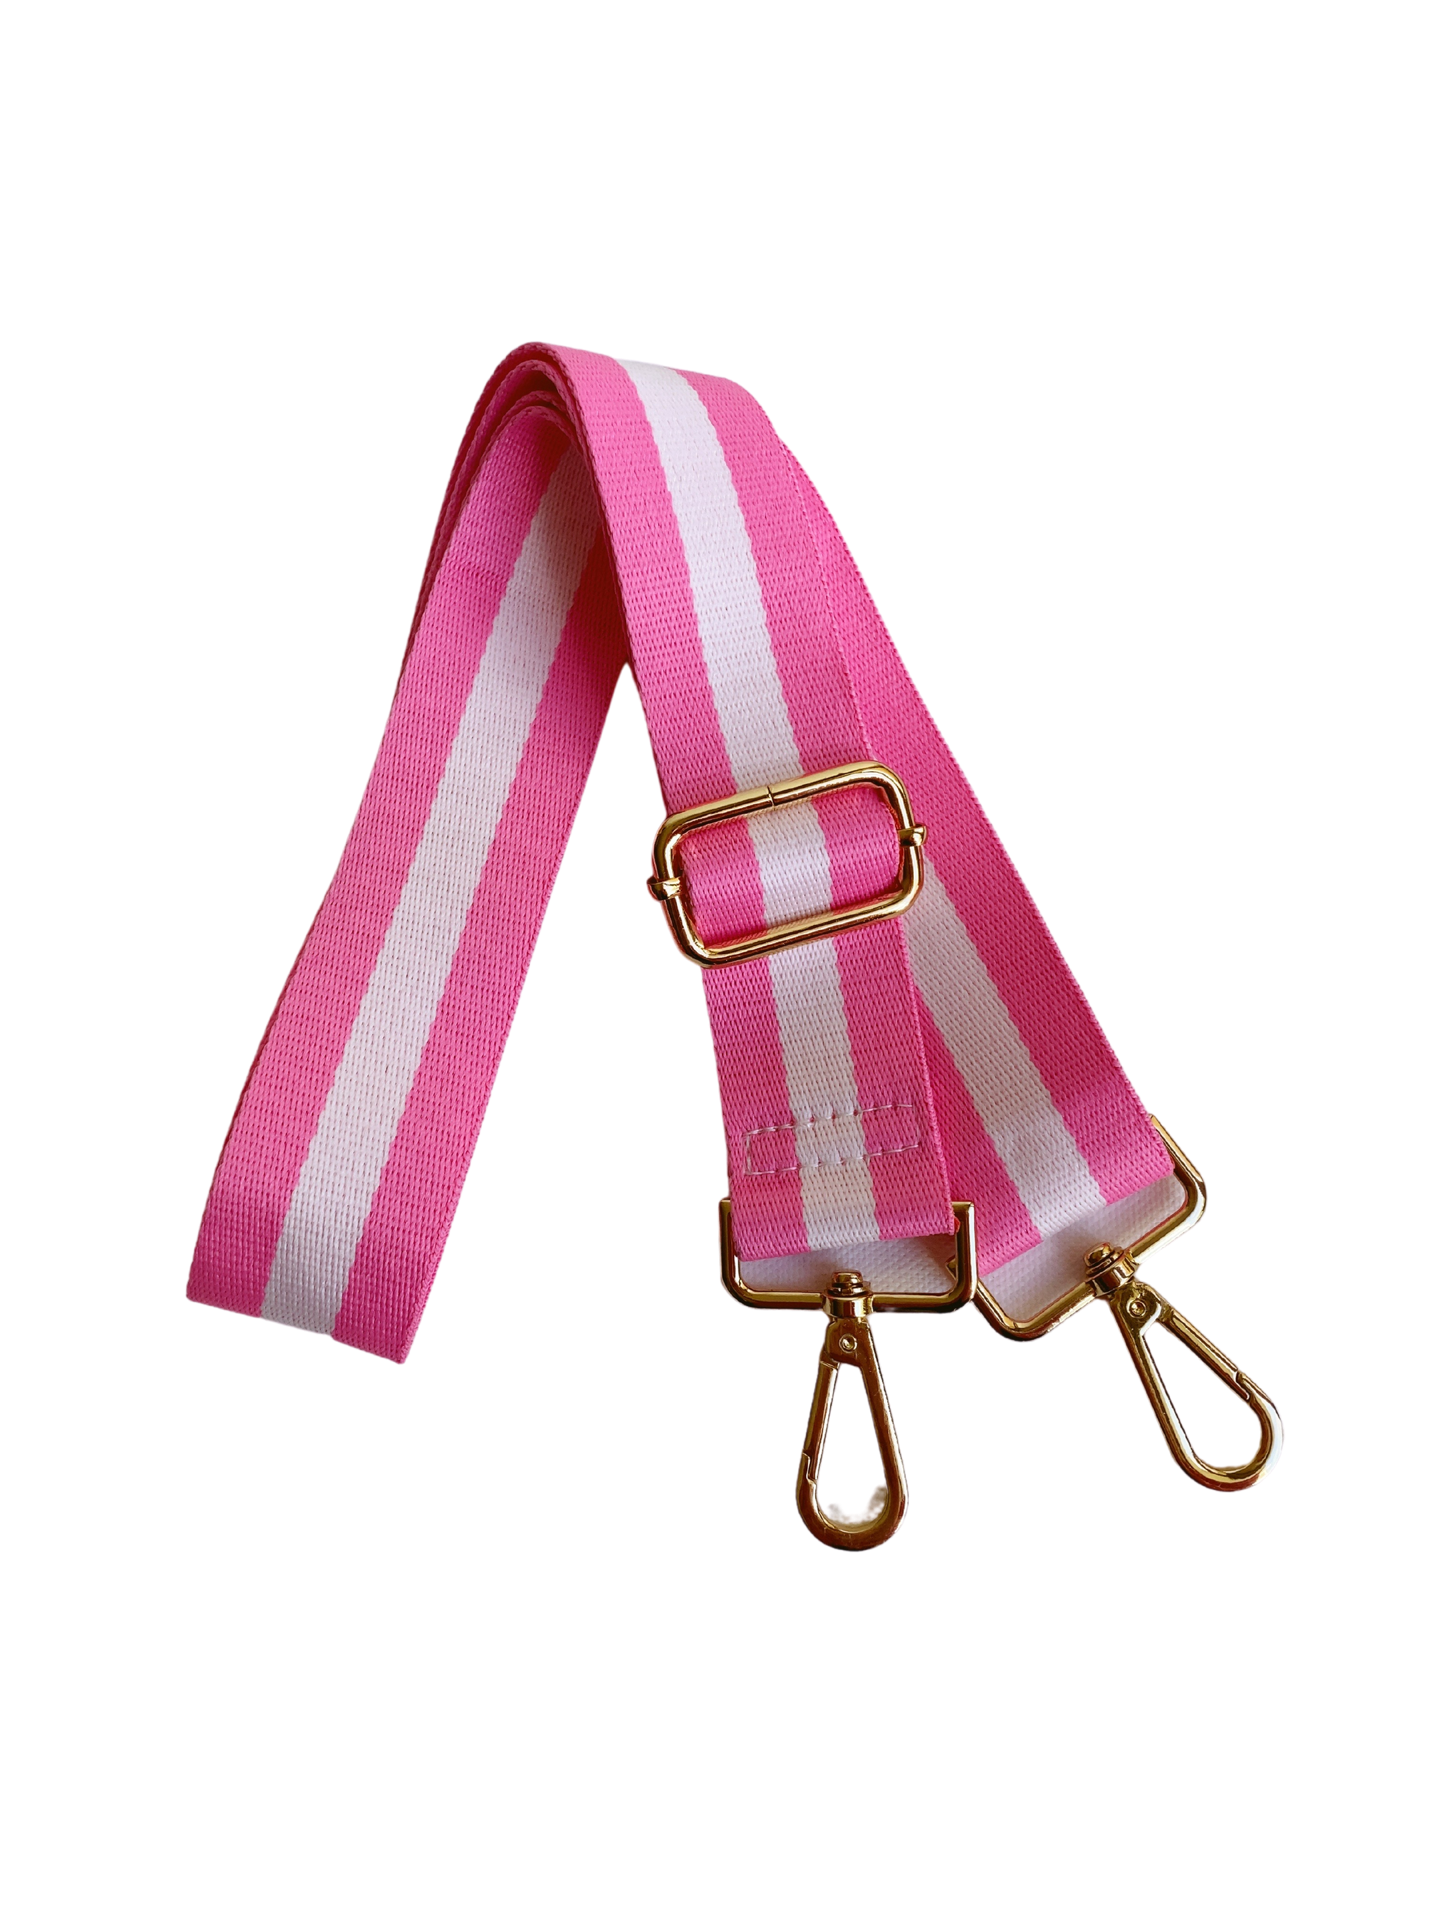 Stripe Bag Strap - Pink/White